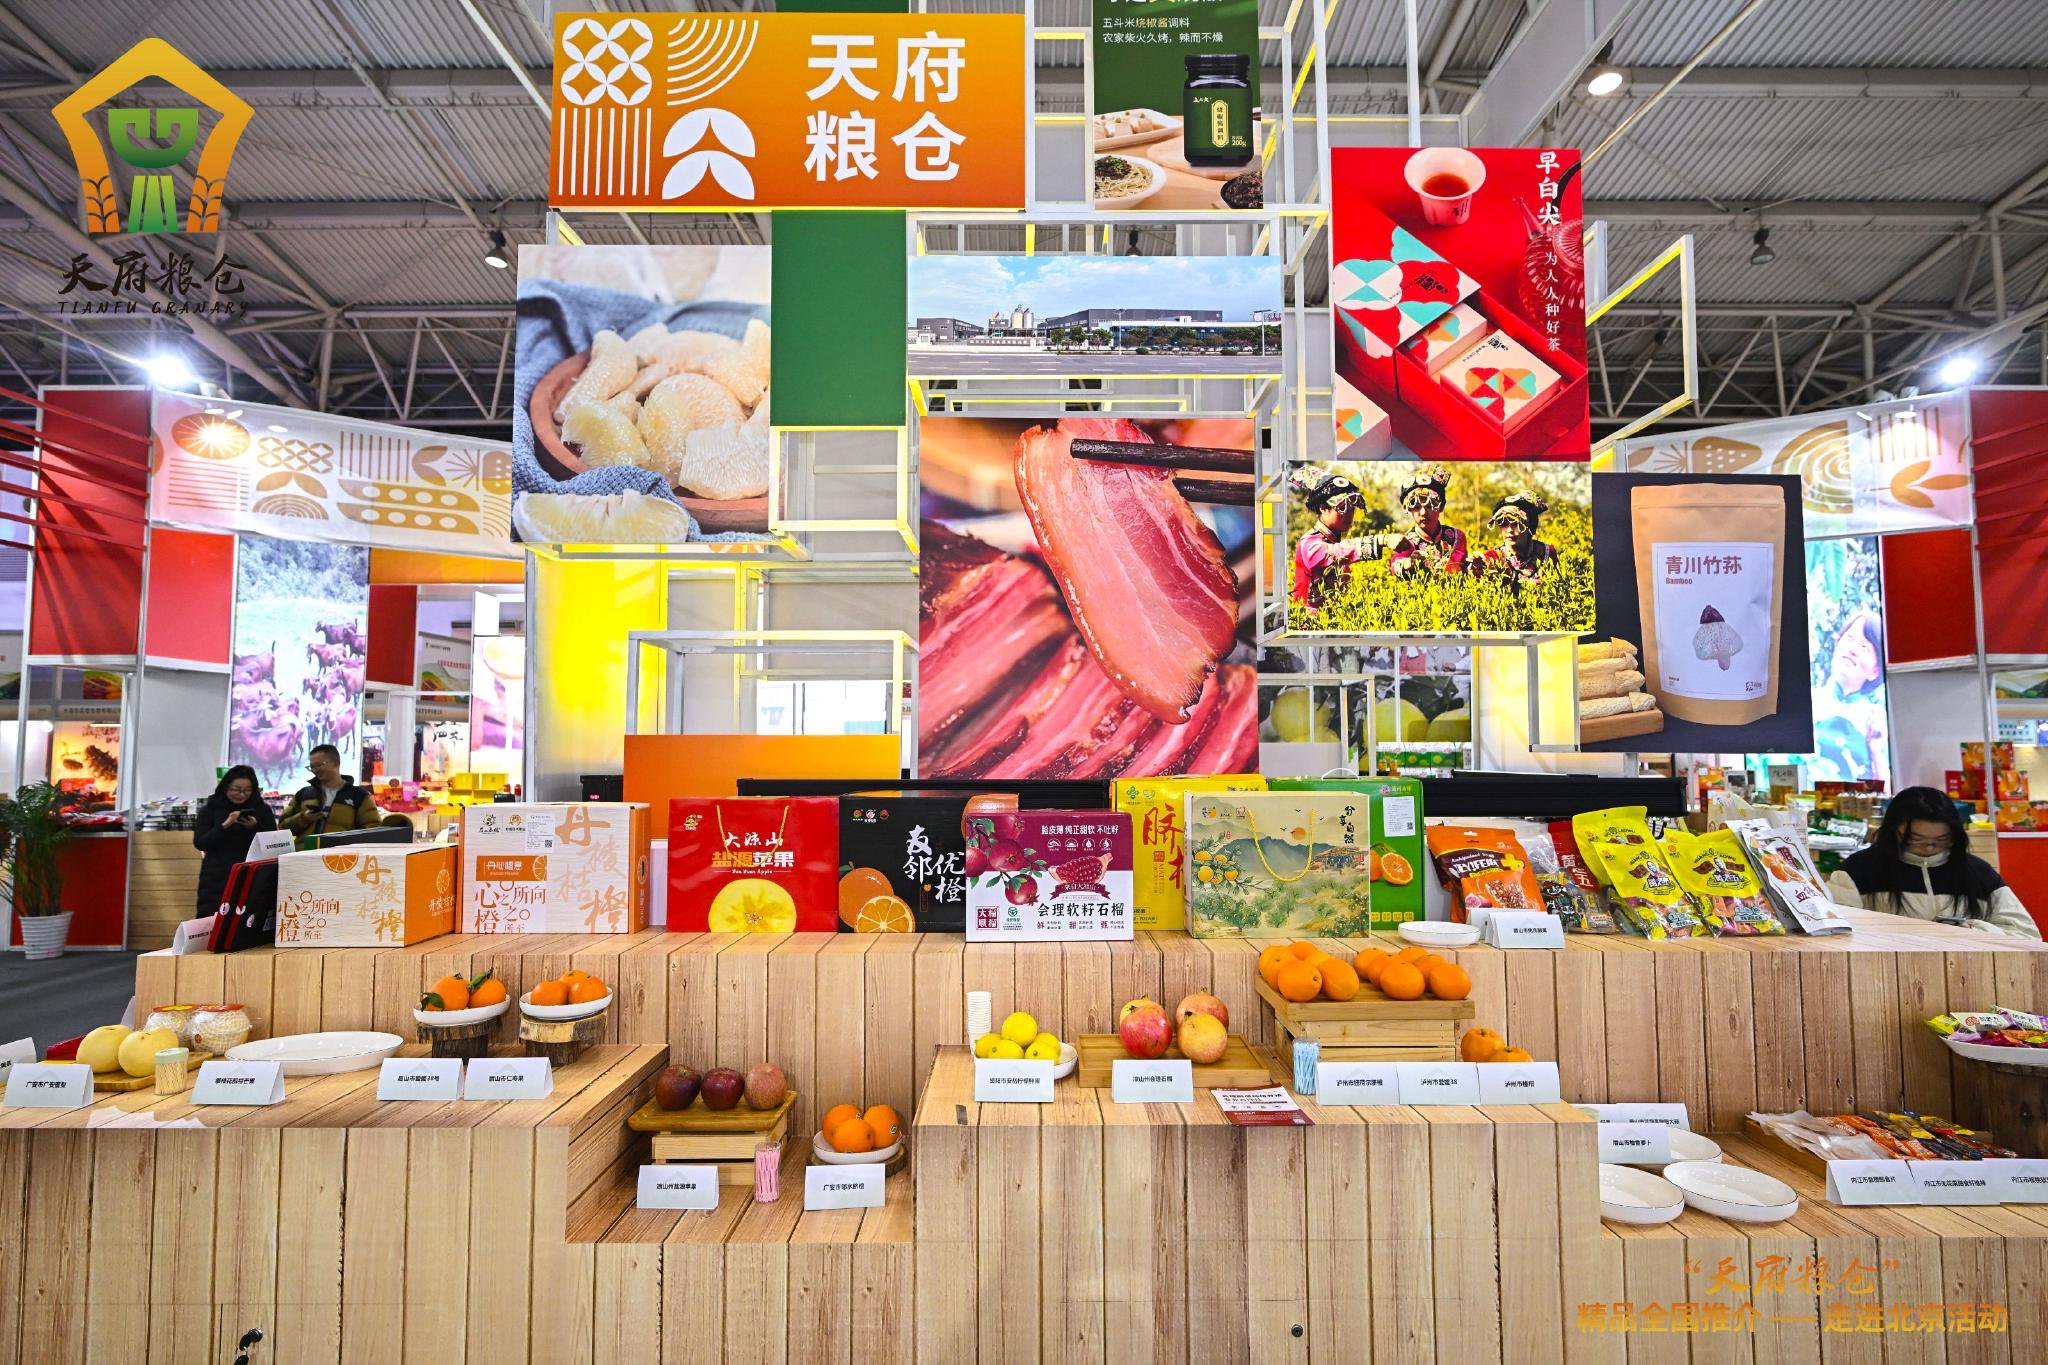 「天府糧倉」精品全國推介——走進北京活動在全國農業展覽館舉行。受訪者供圖